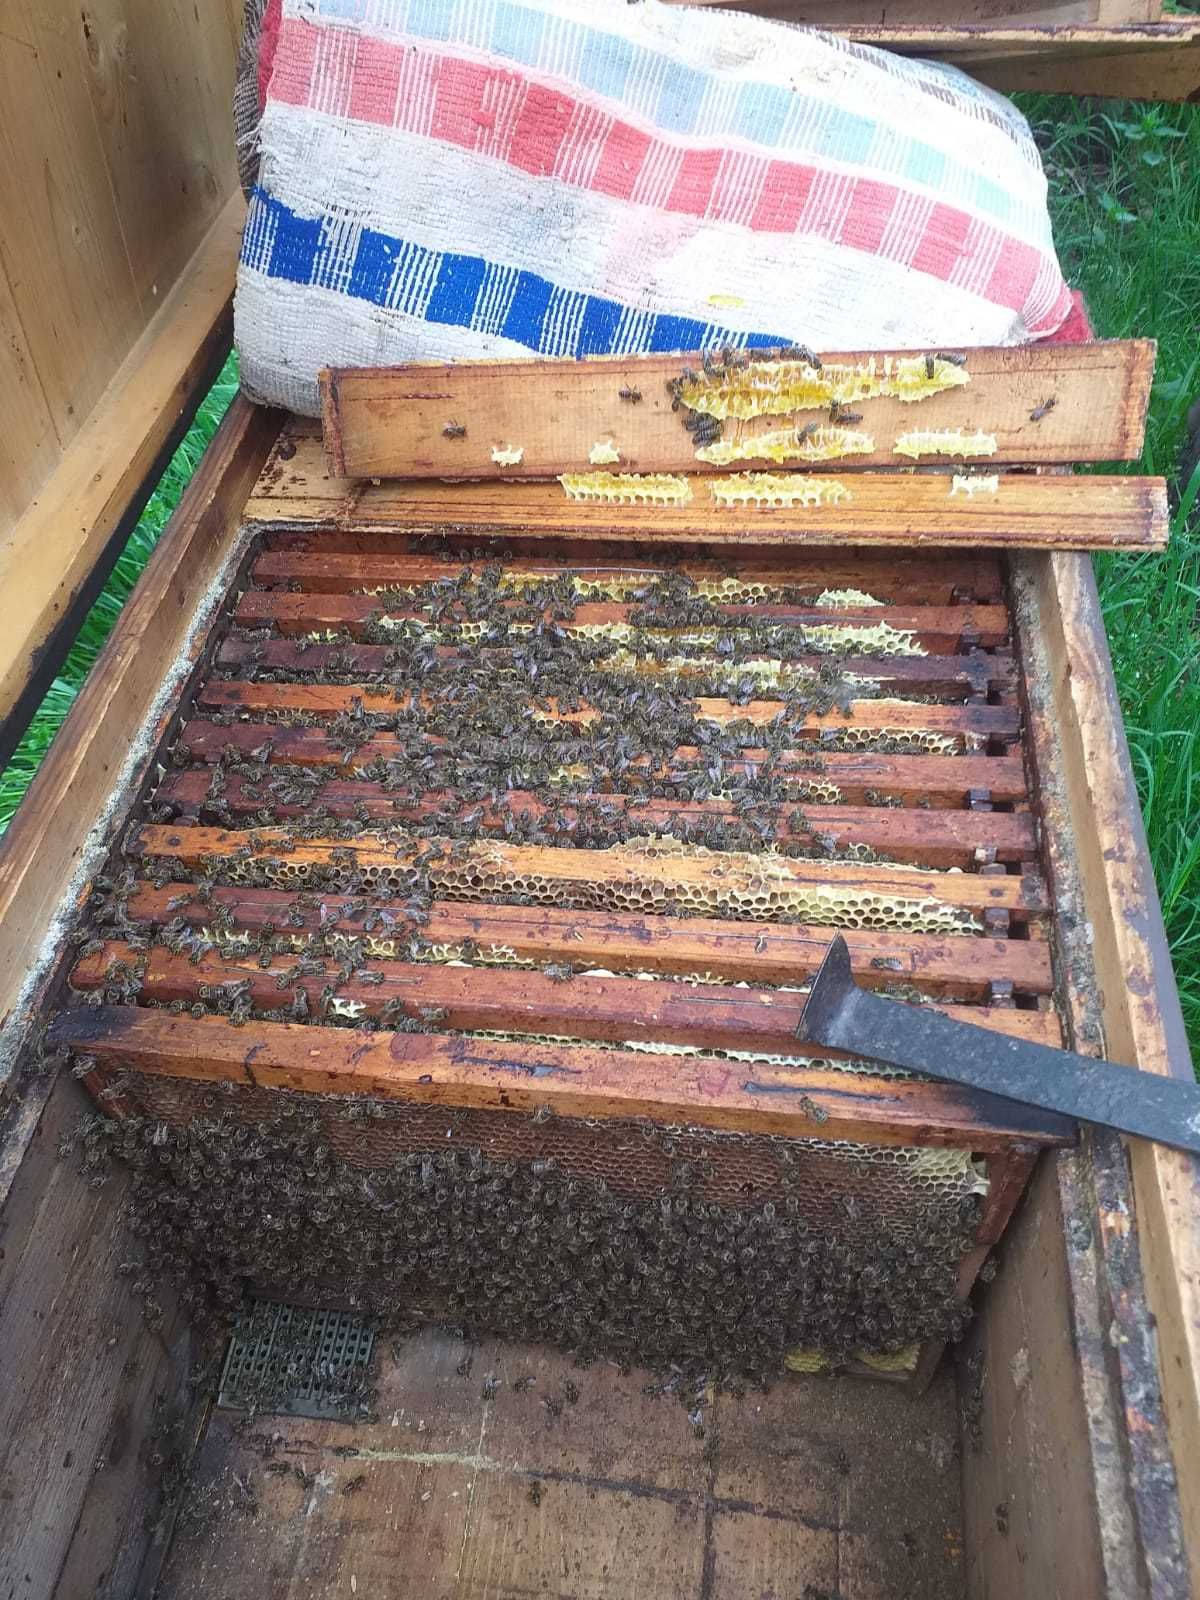 Vand familii de albine 15 rame (33ron/rama) pot sa dau si cutii